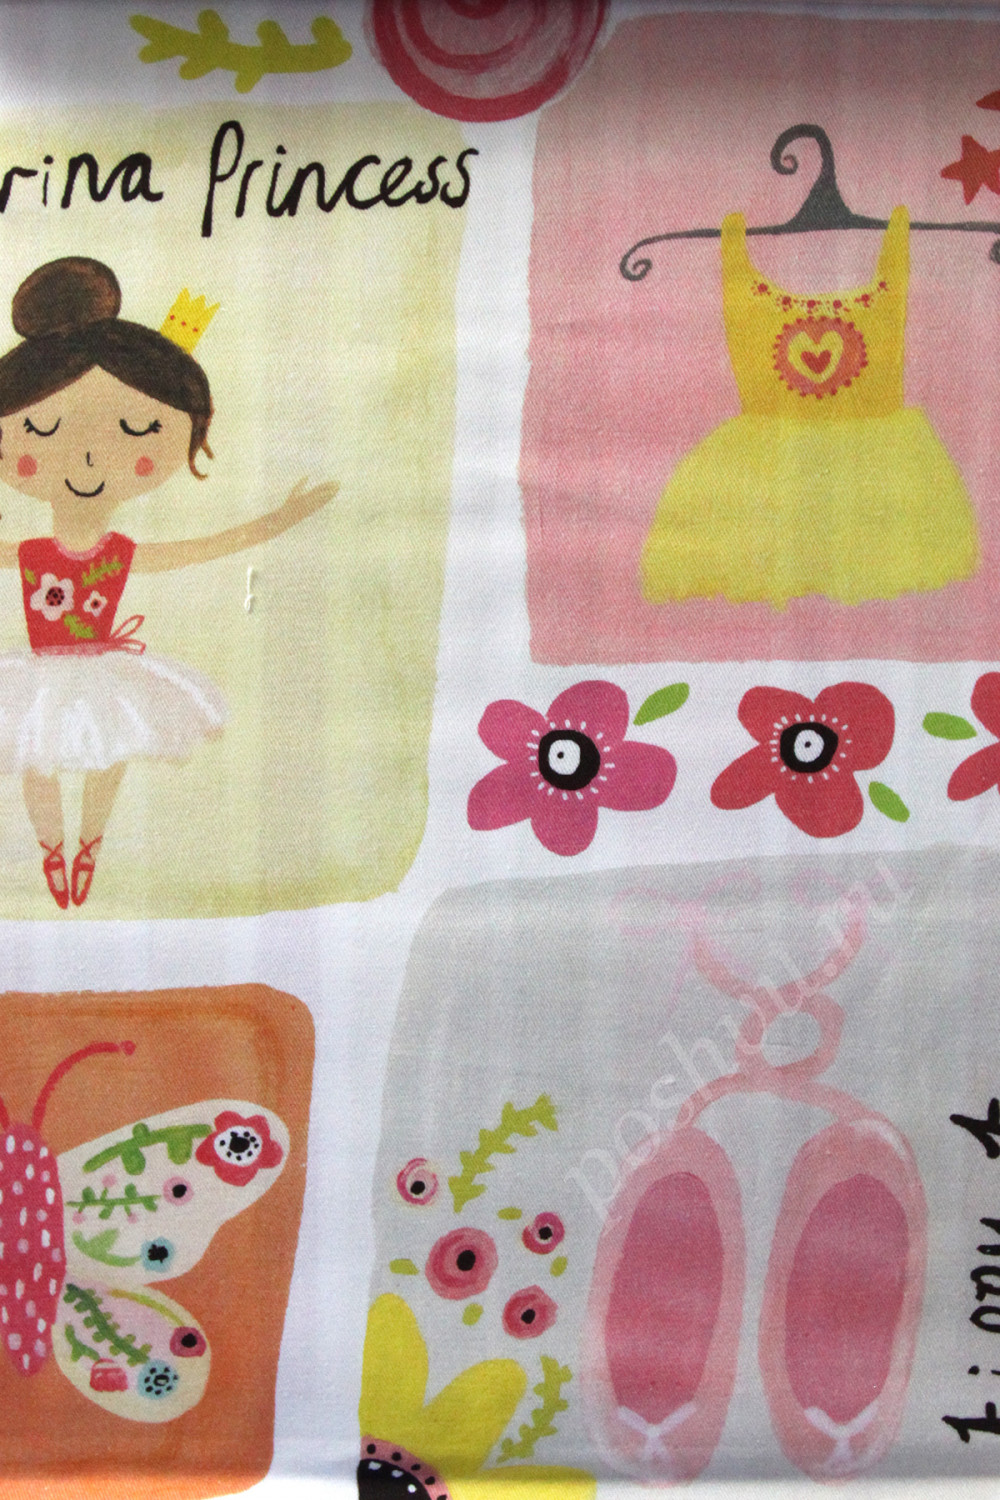 Ткань для штор саржа BALLERINA детский рисунок балерин в розовых тонах (раппорт 67х69см)